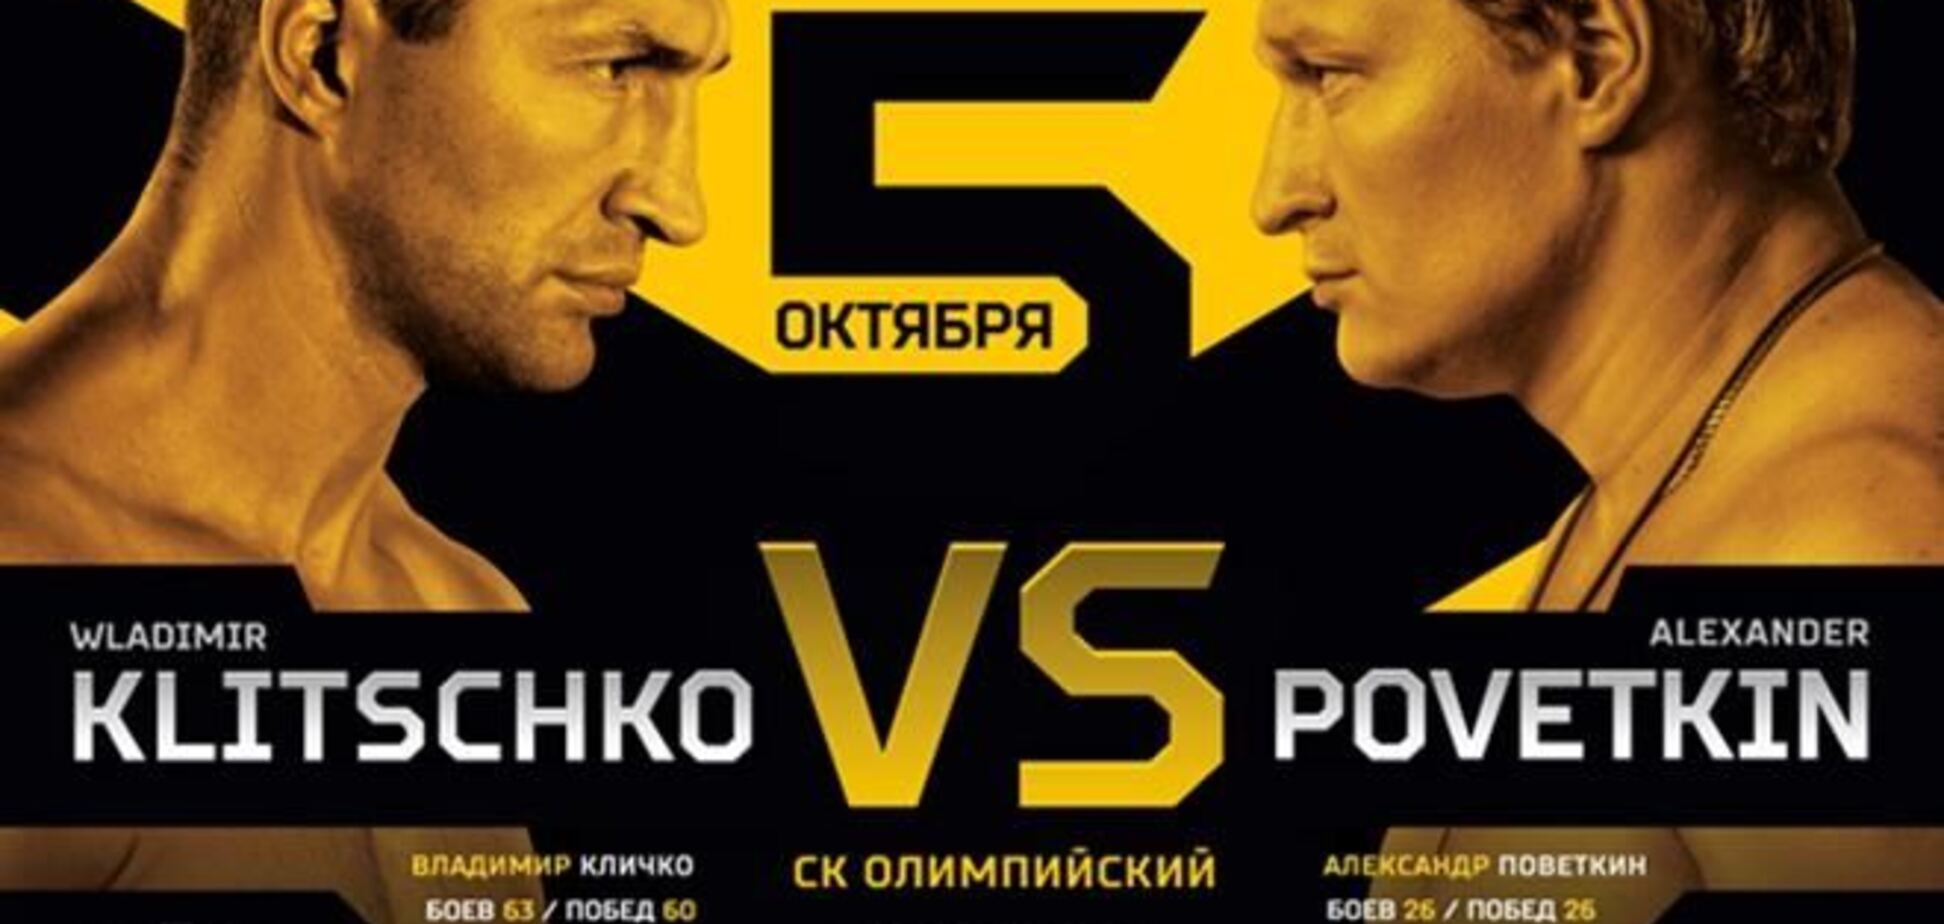 Бой Кличко и Поветкина в заголовках новостей